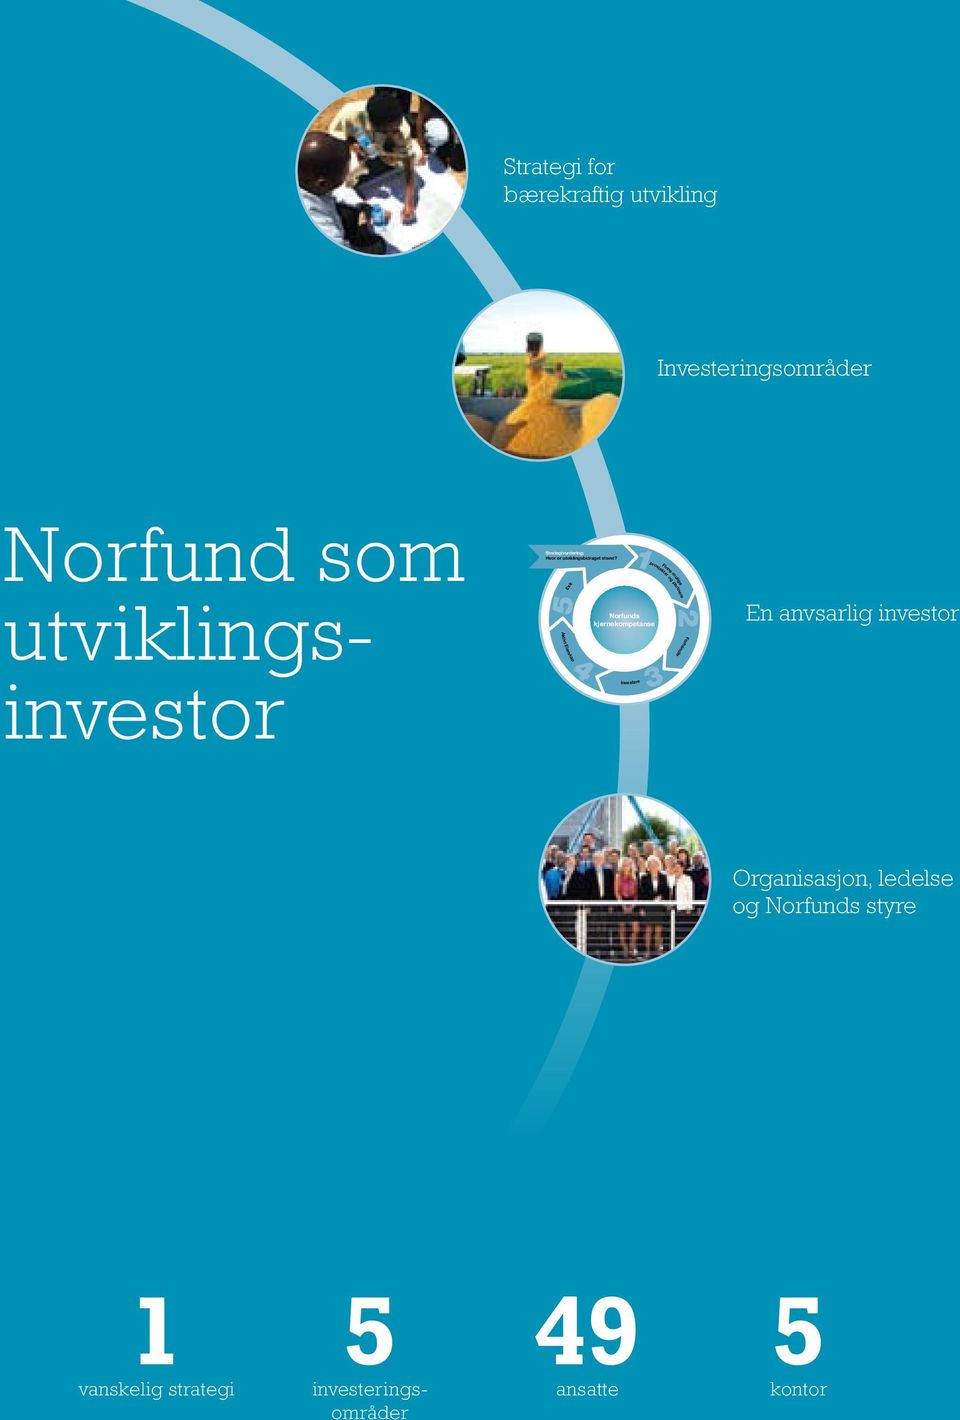 Exit 5 Aktivt Eierskap 4 Investere 1prosjekter og partnere 2 Norfunds kjernekompetanse 3